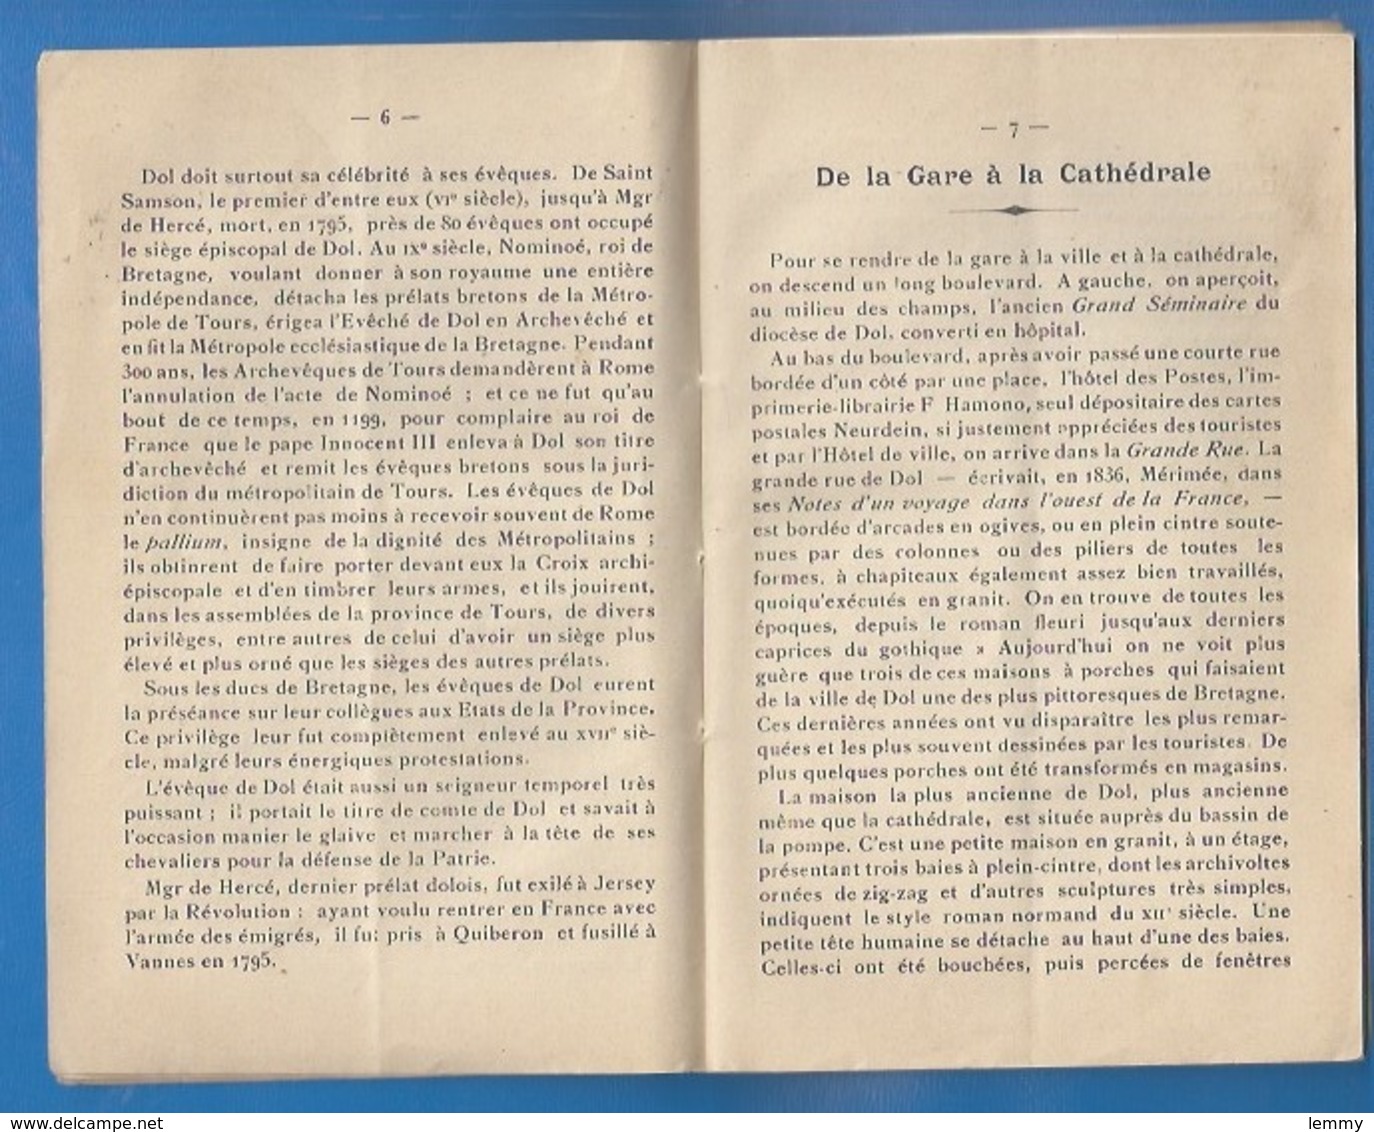 35 - DOL-DE-BRETAGNE - GUIDE DE DOL - 1937 - CATHÉDRALE, MONT-DOL, PIERRE DU CHAMP-DOLENT - 66 PAGES - Dol De Bretagne